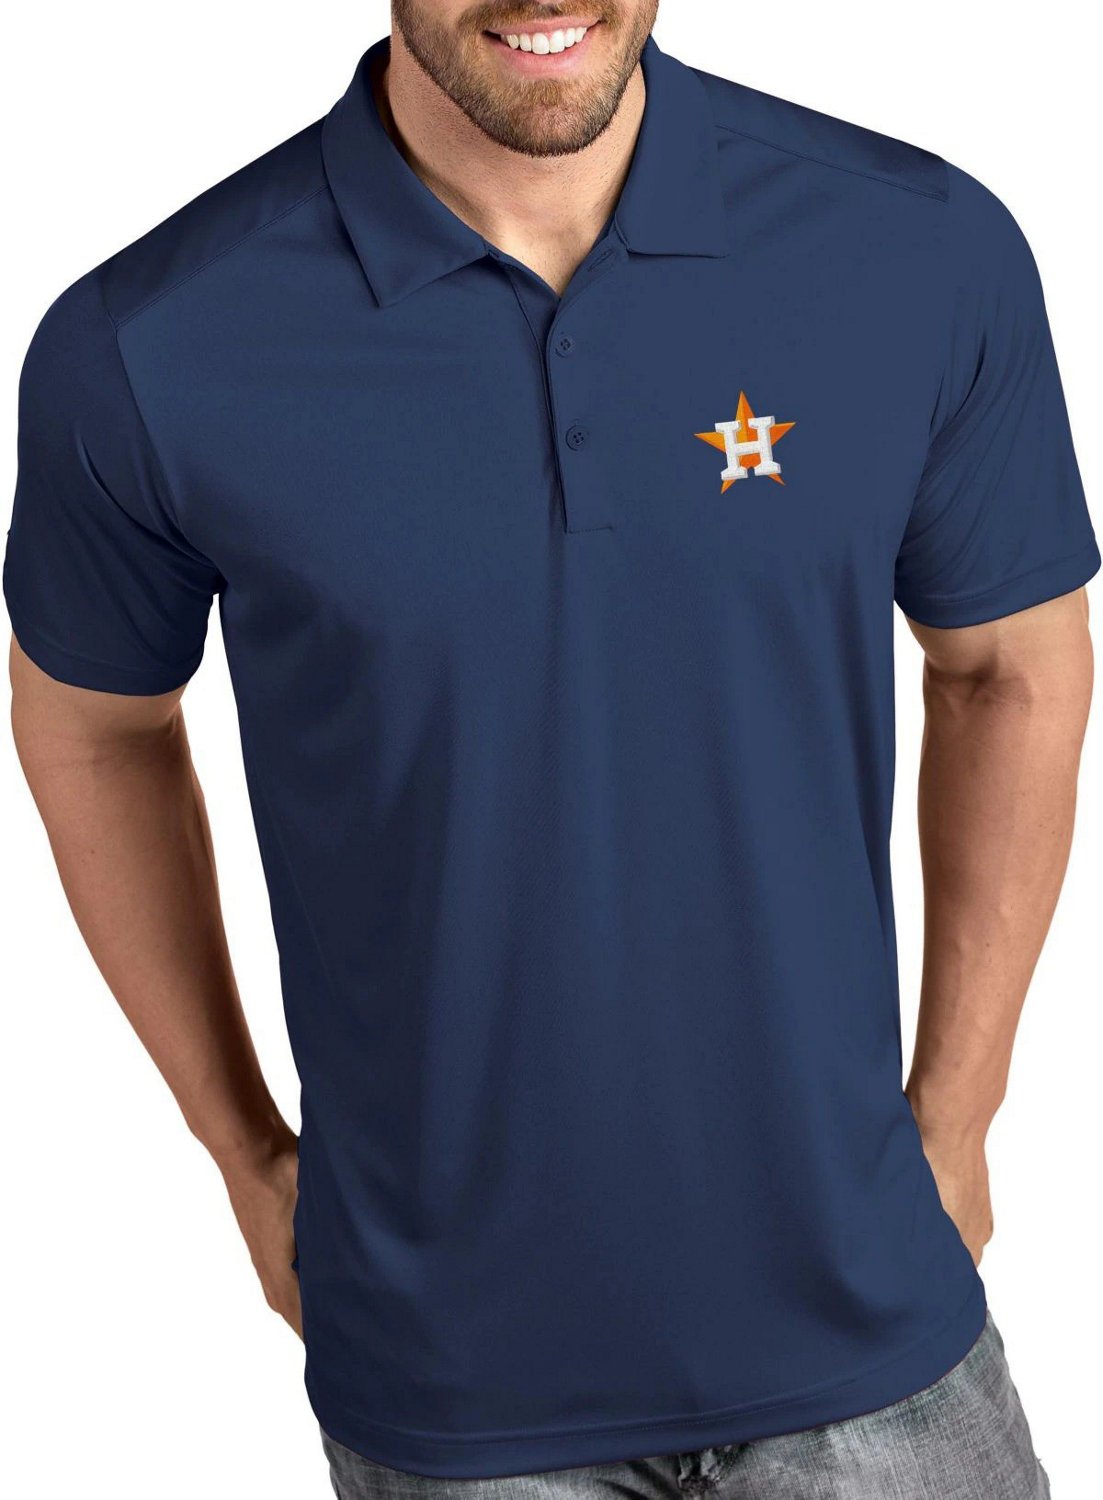 Houston astros shirts